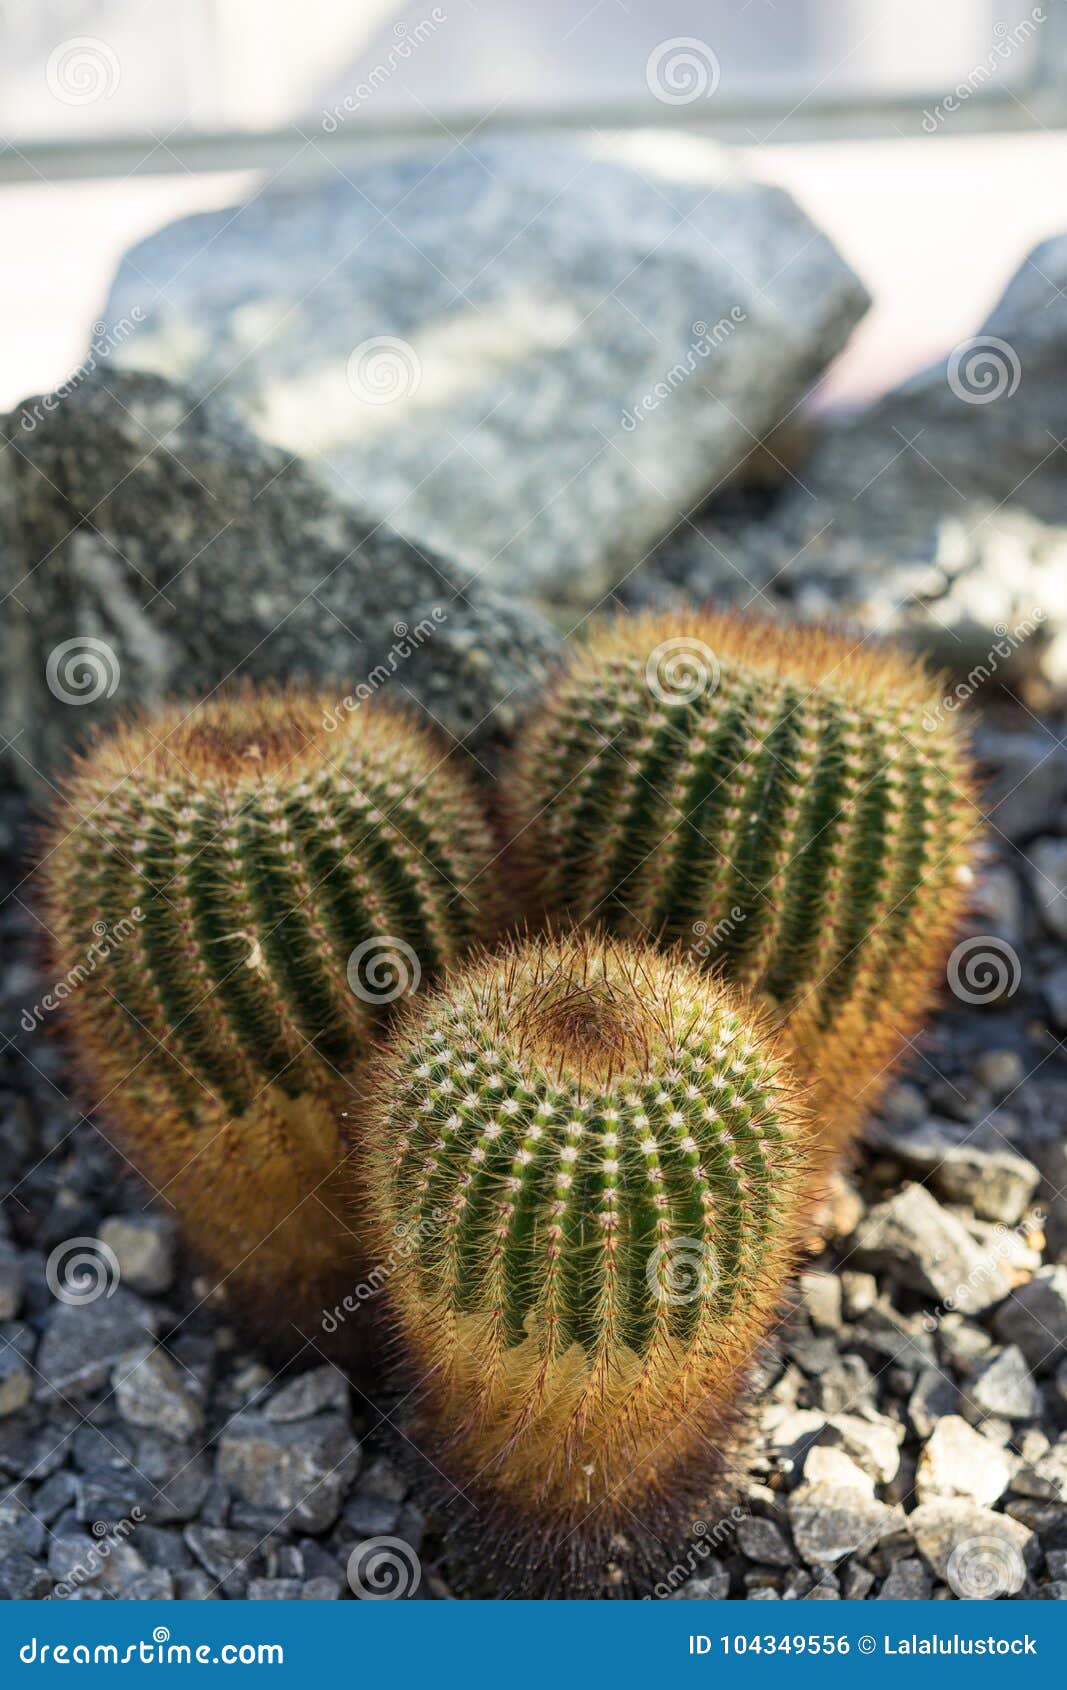 three parodia scopa cactus succulent red spikes